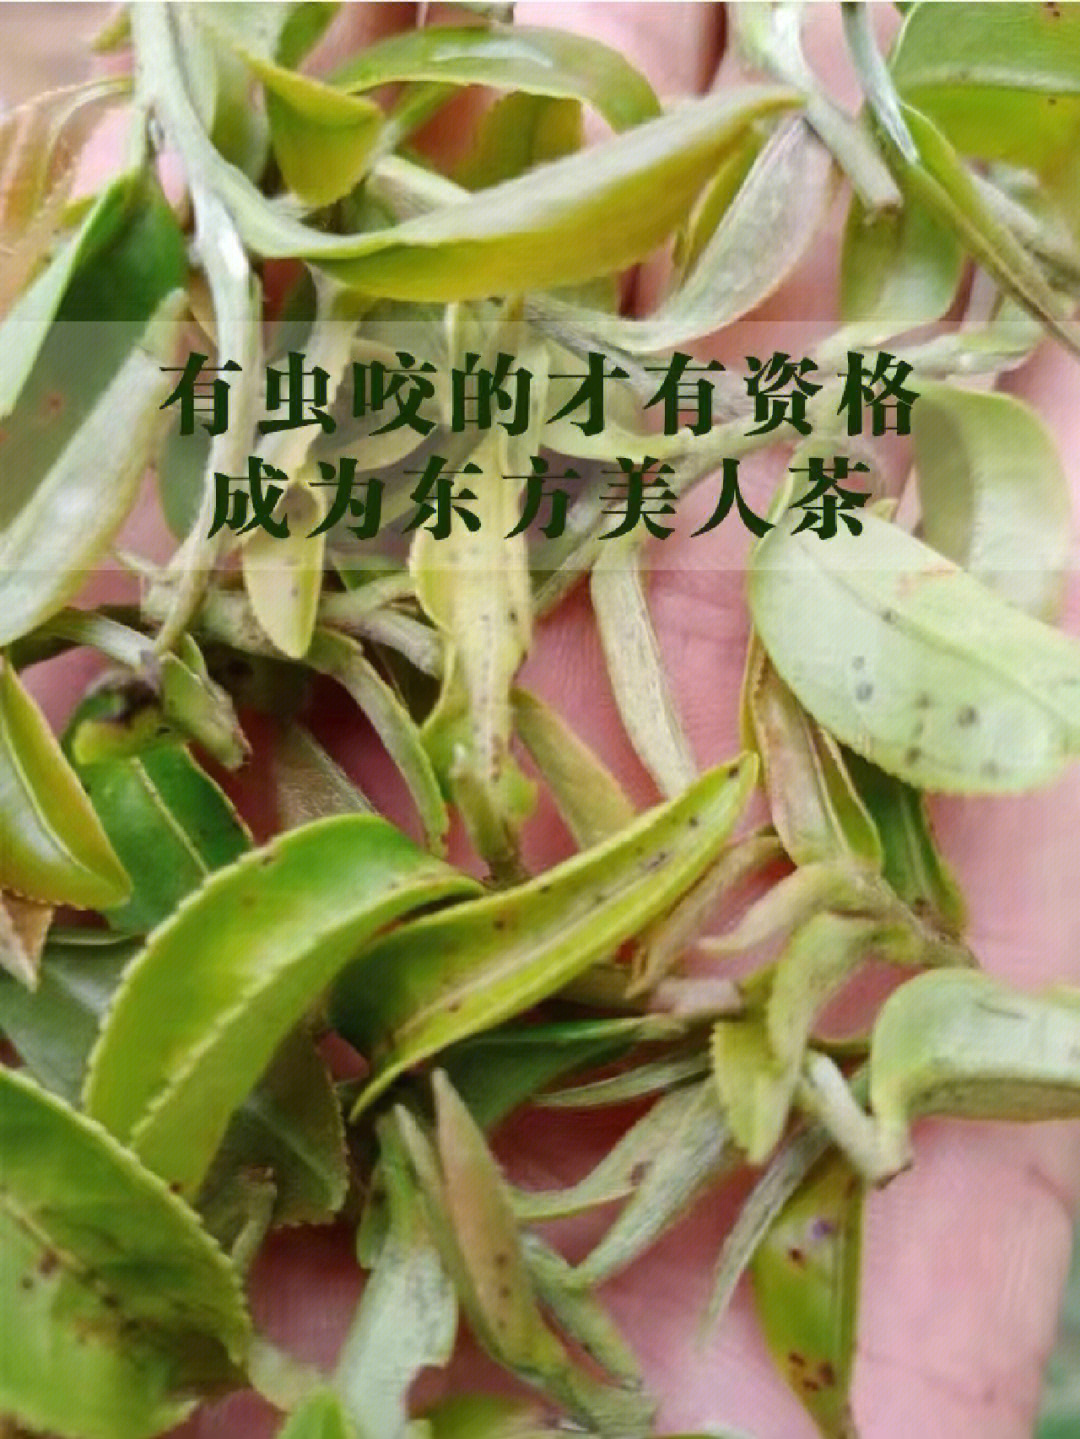 东方美人茶的香气,事实上也是一种茶树的防御反应,它被小绿叶蝉咬伤了